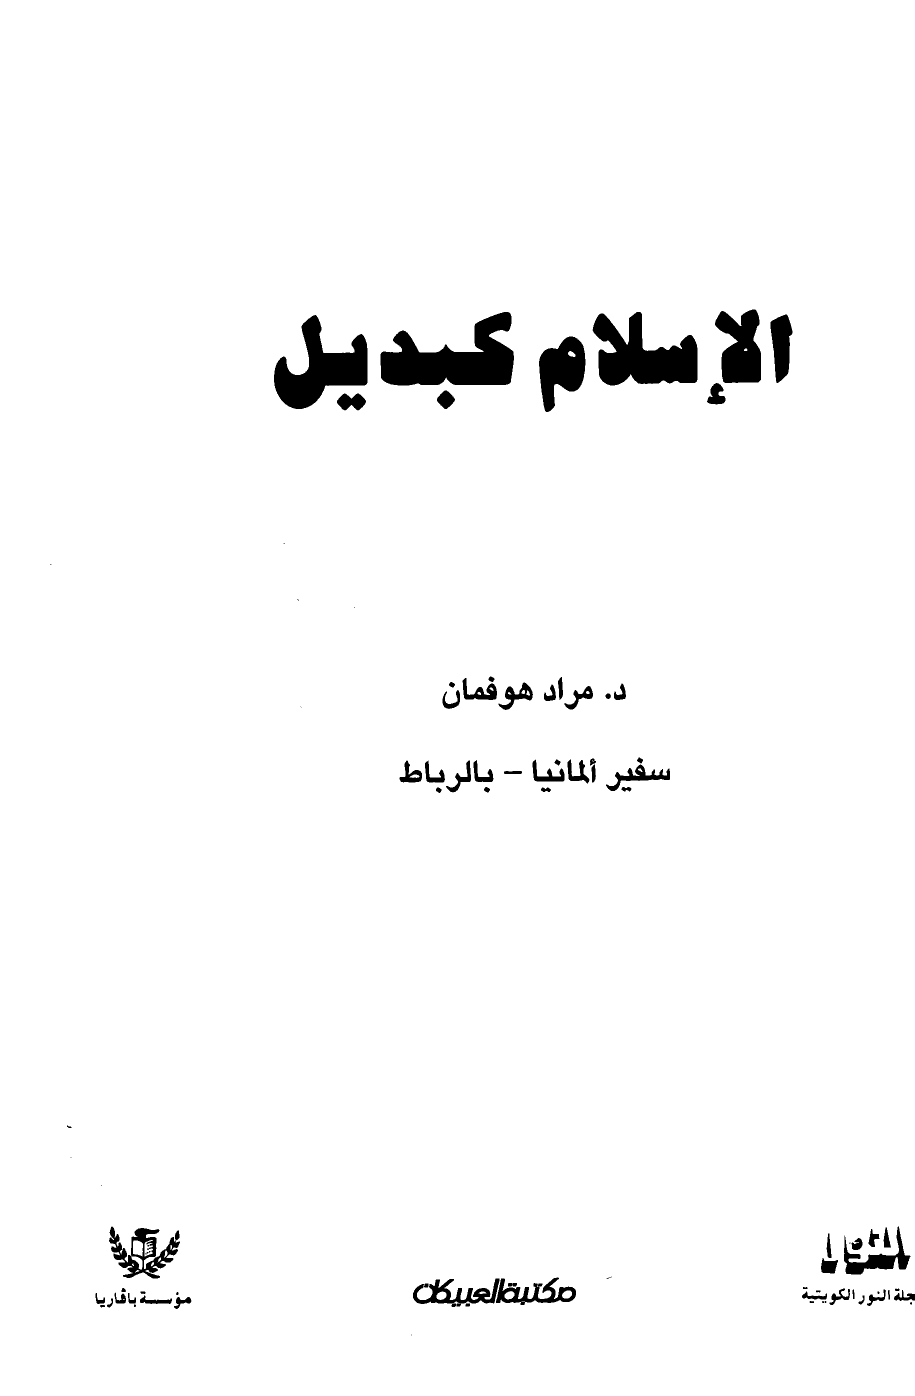 تنزيل وتحميل كتاِب الإسلام كبديل pdf برابط مباشر مجاناً 